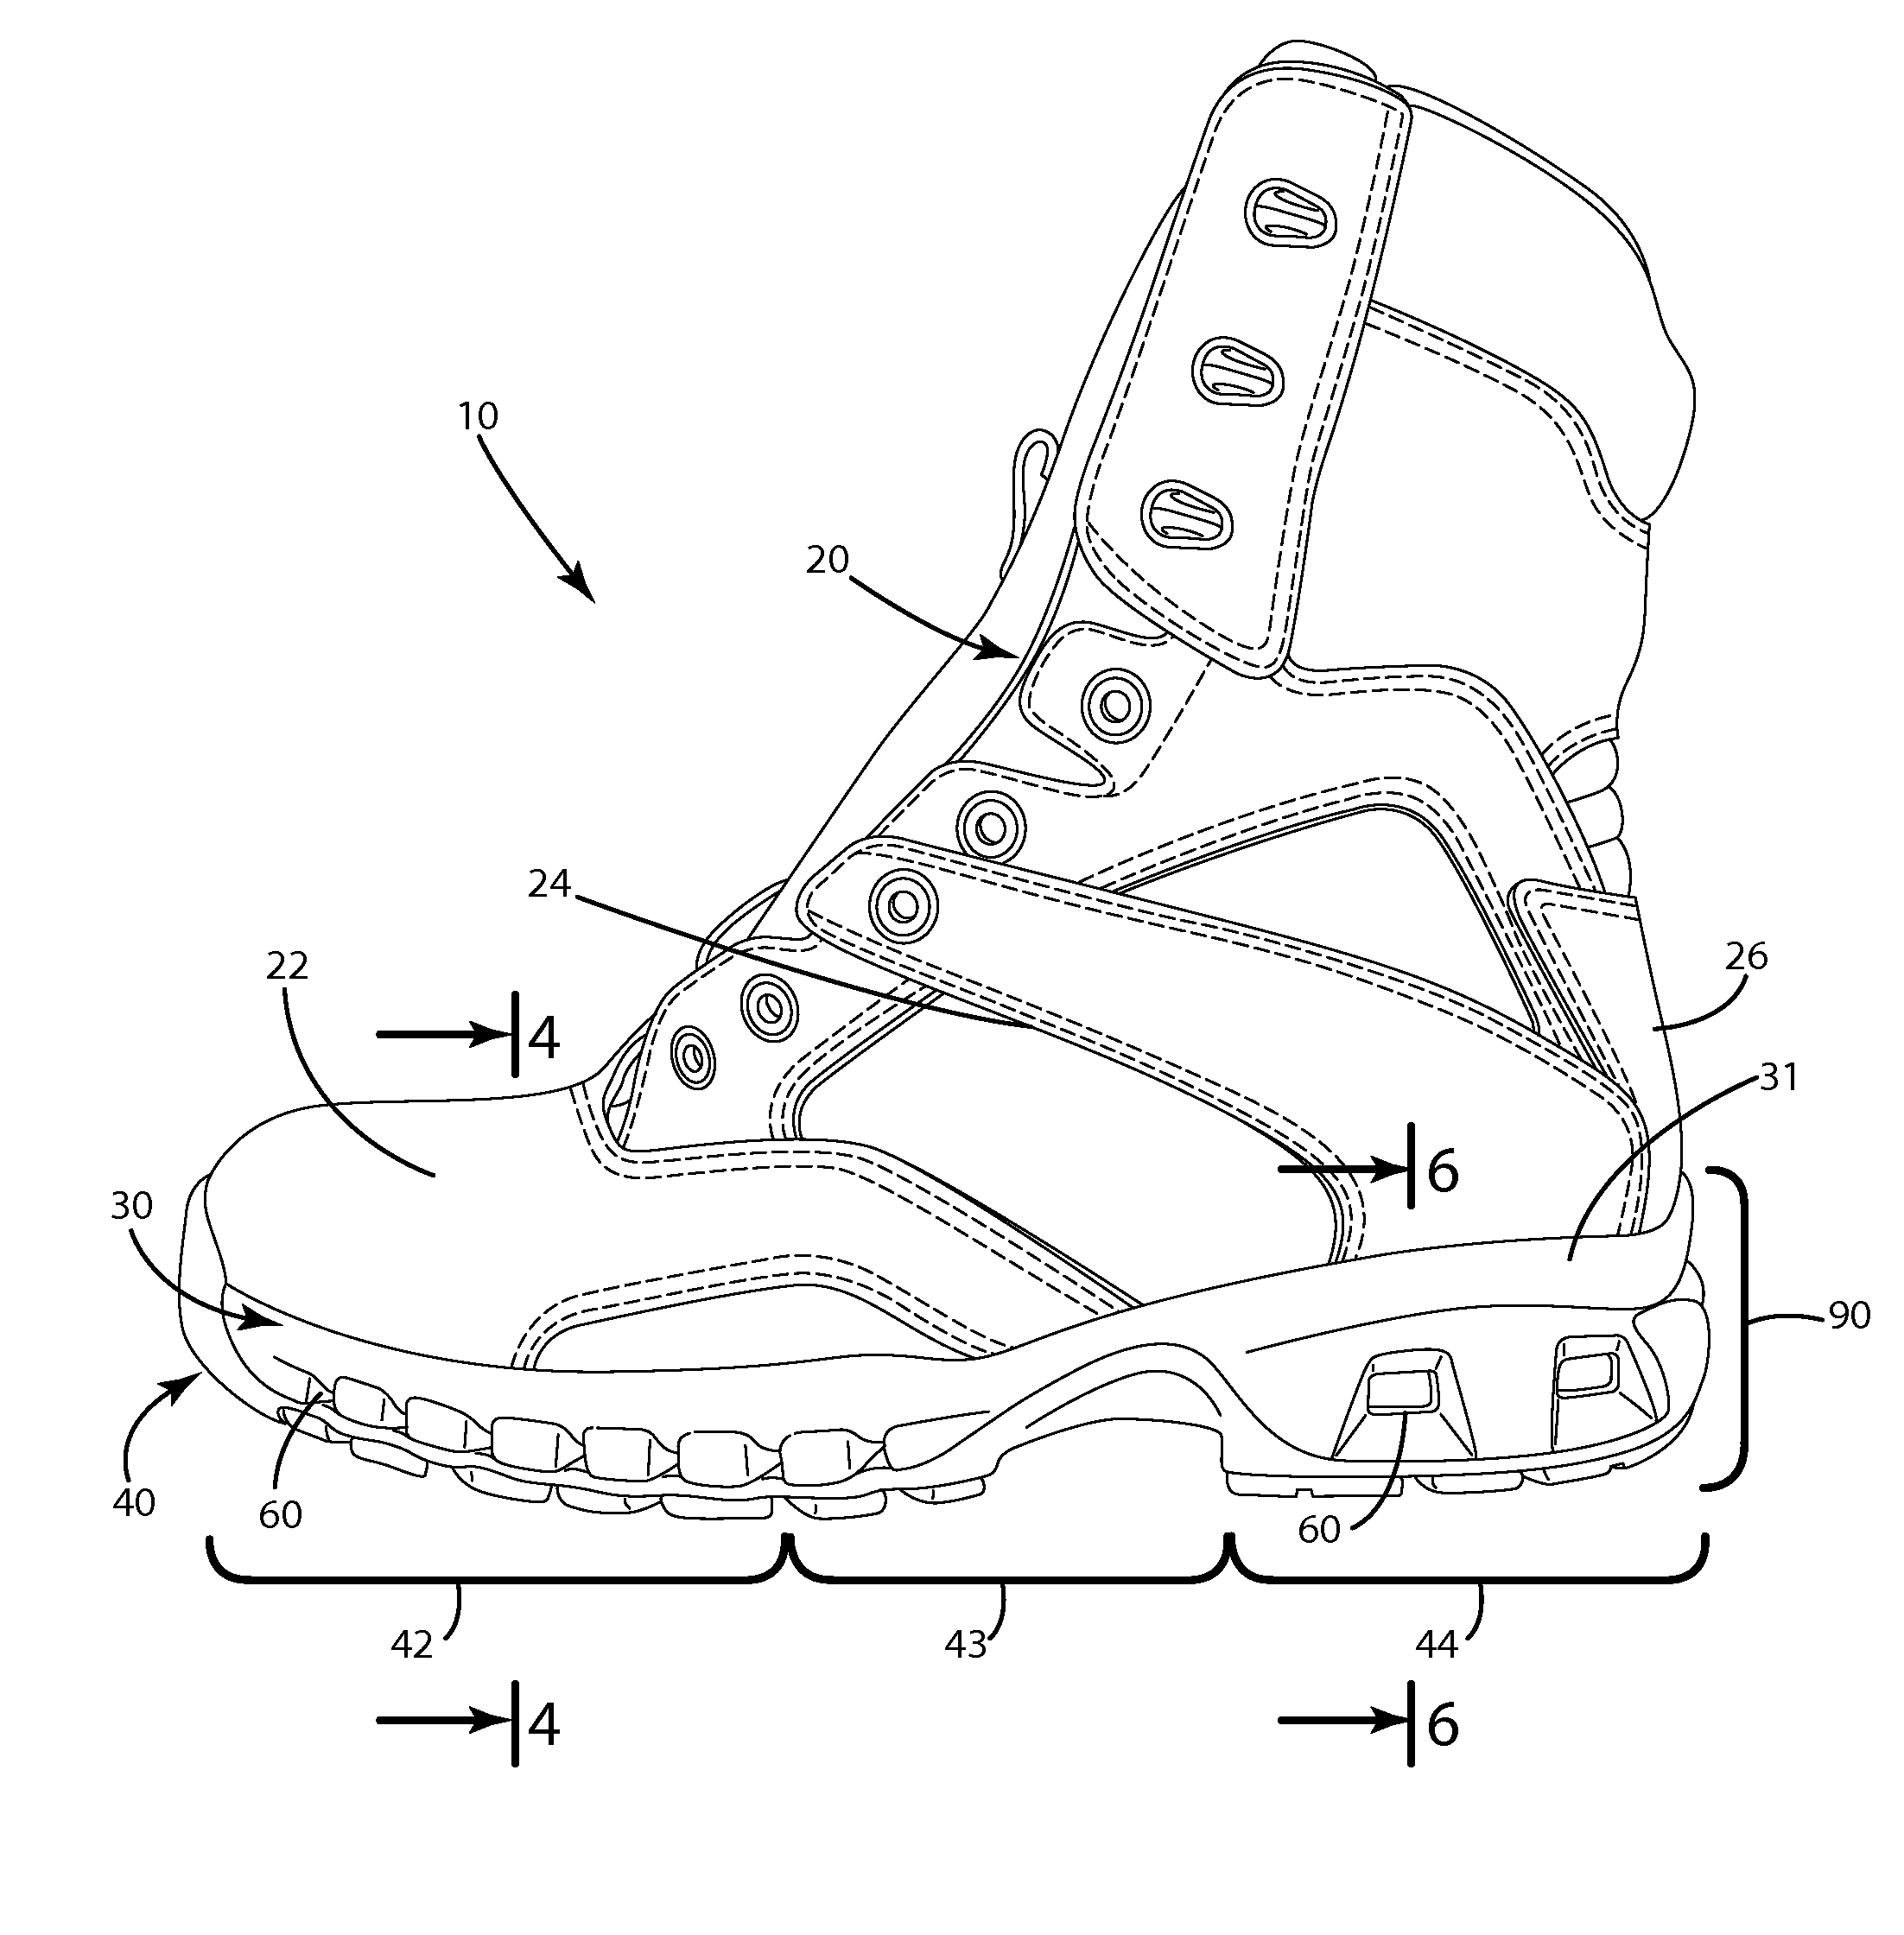 Water barrier for footwear